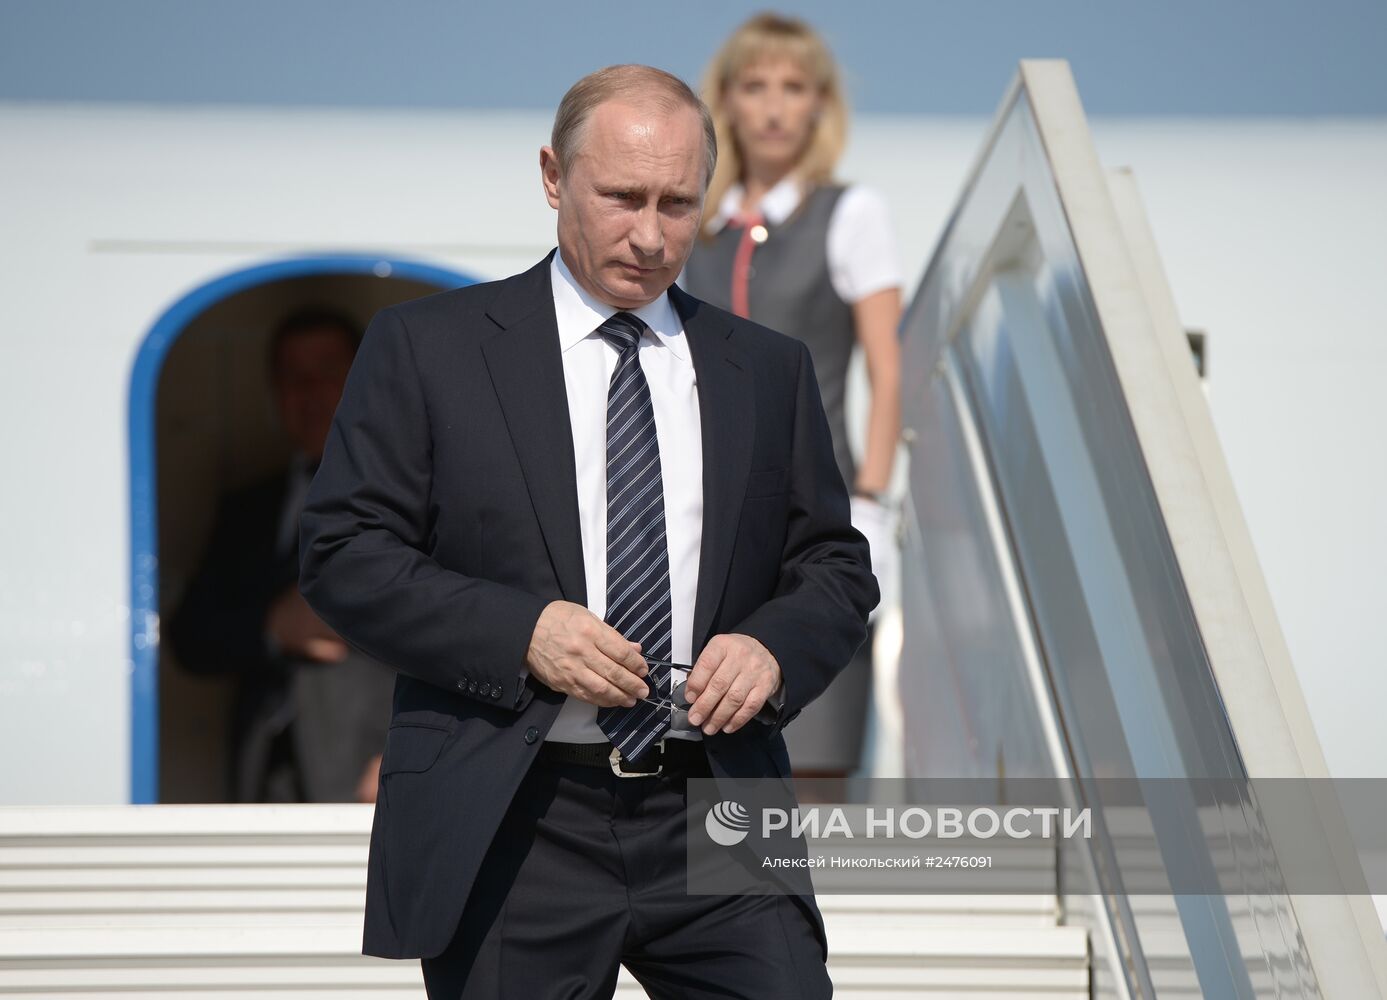 Рабочая поездка В.Путина в Крымский федеральный округ